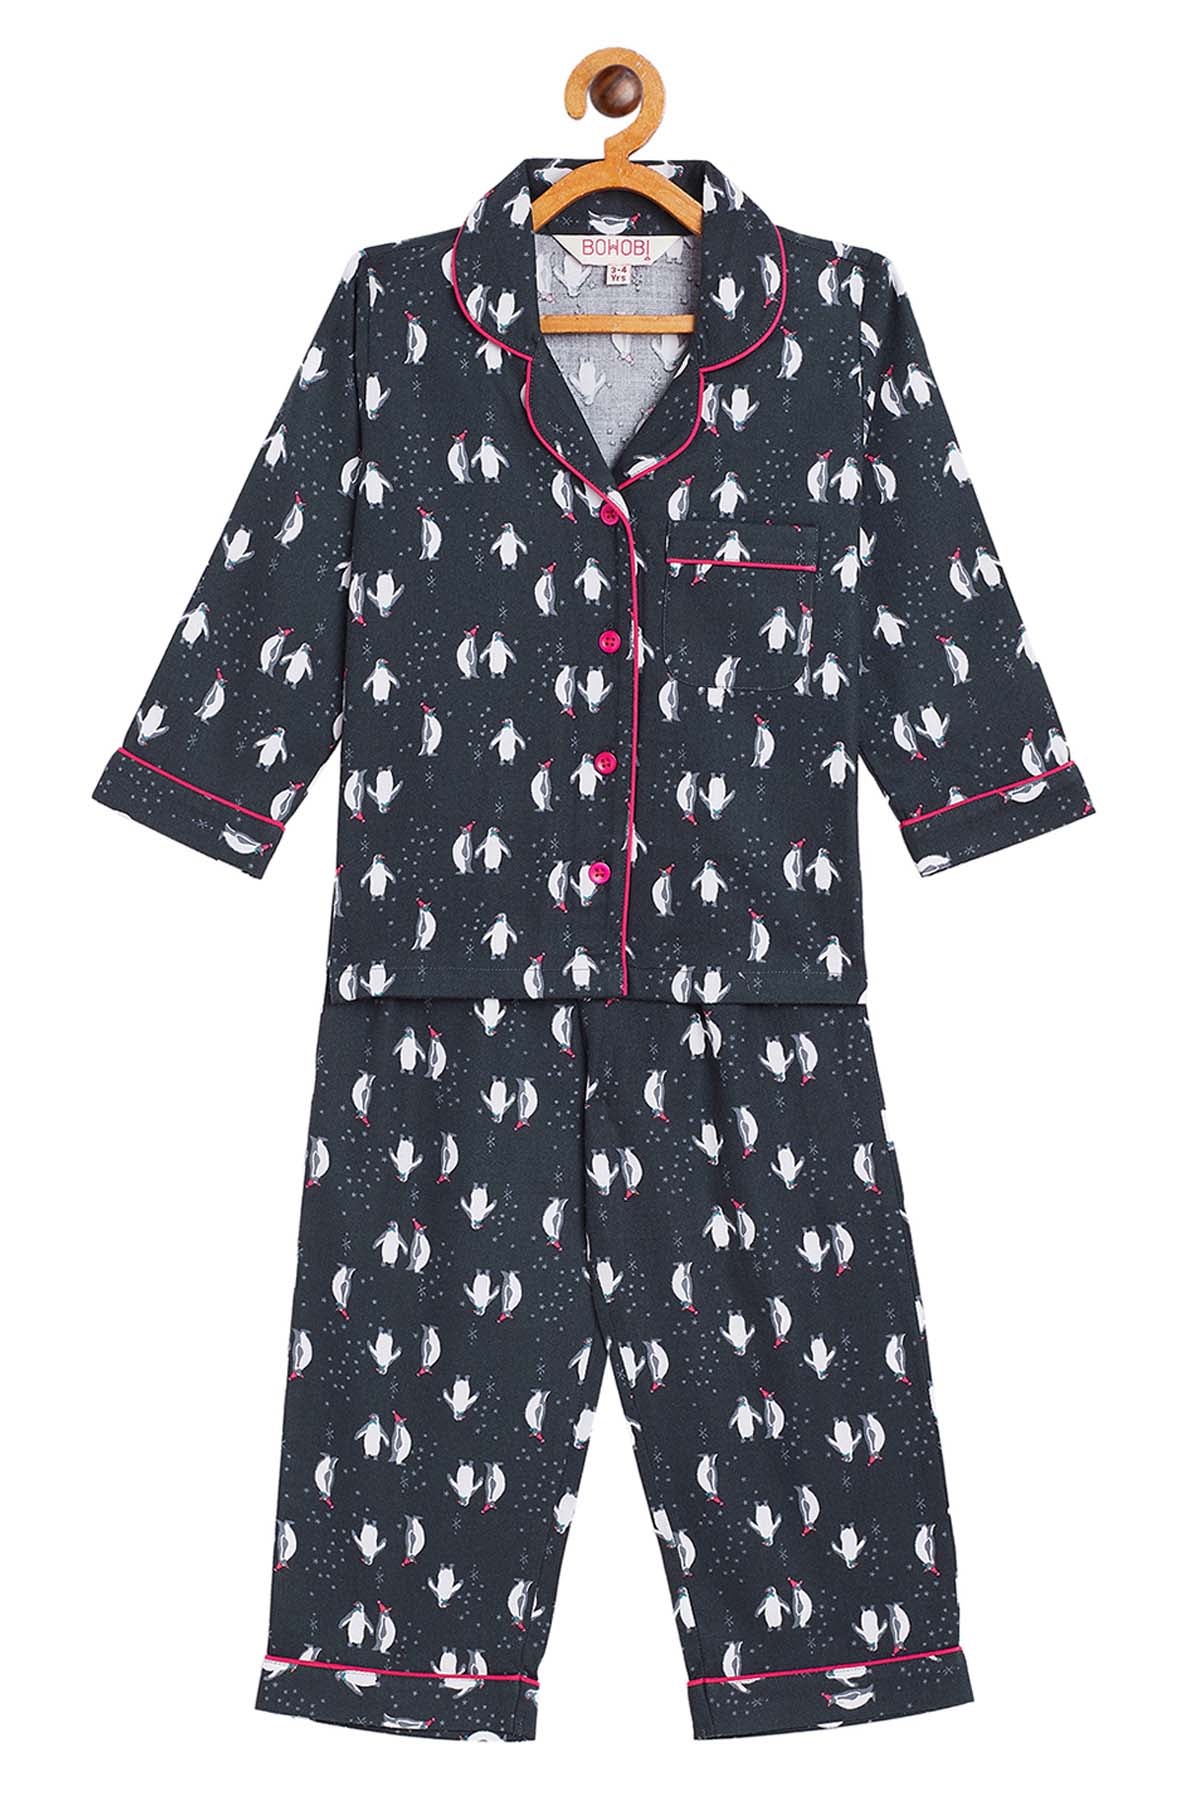 Bohobi Black Penguin Print Sleepwear for kids online at ScrollnShops